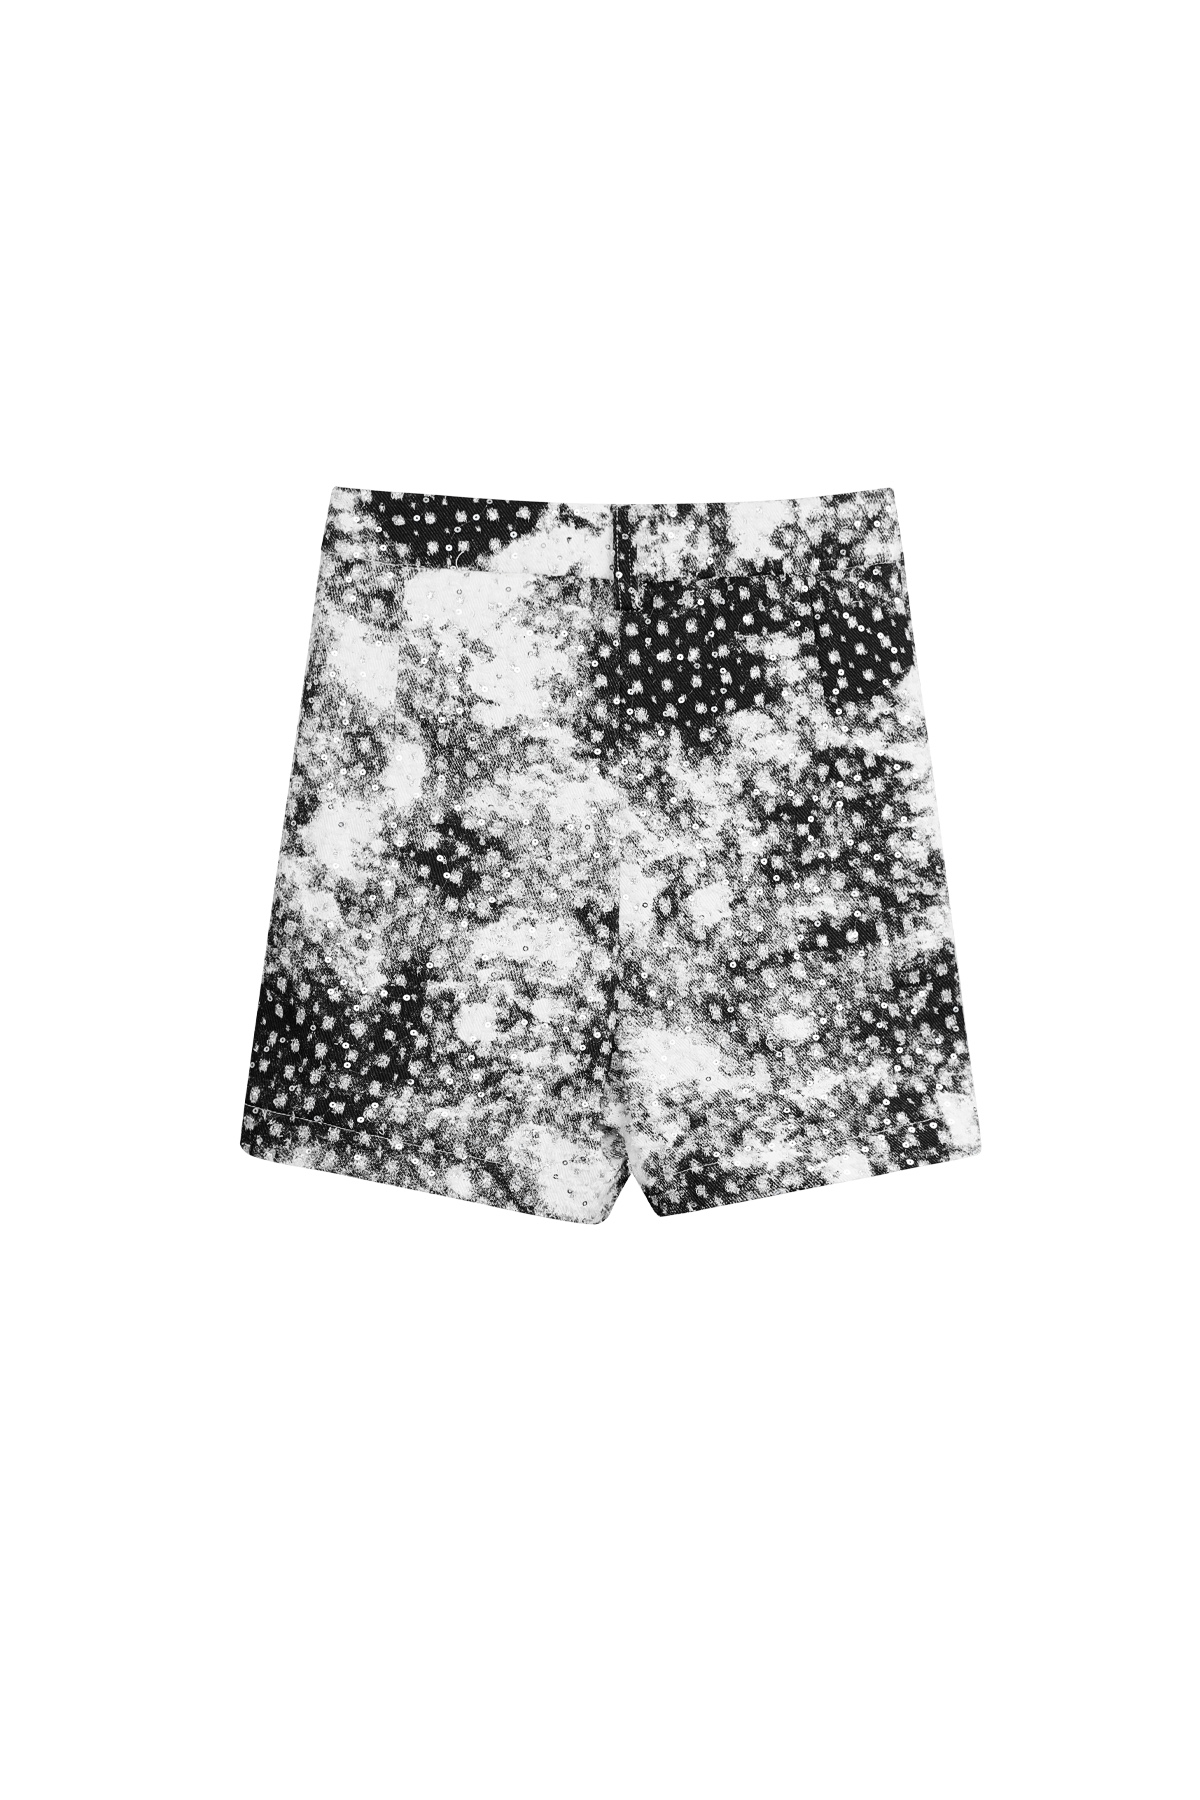 Short vlekken met glitter - zwart wit - S h5 Afbeelding8